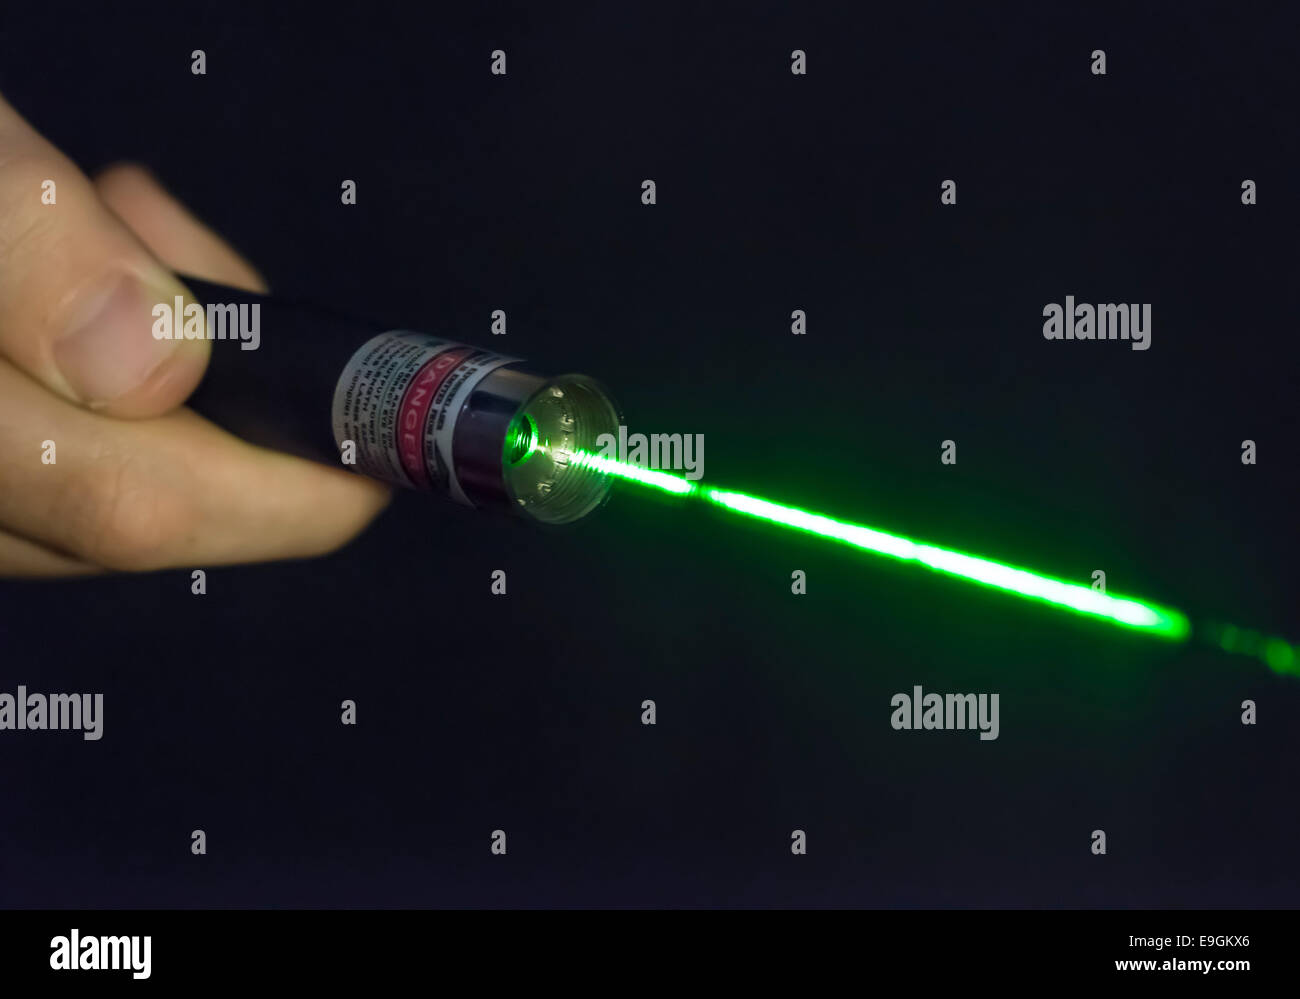 Faisceau laser vert lumineux venant d'un pointeur laser à main terminal Banque D'Images